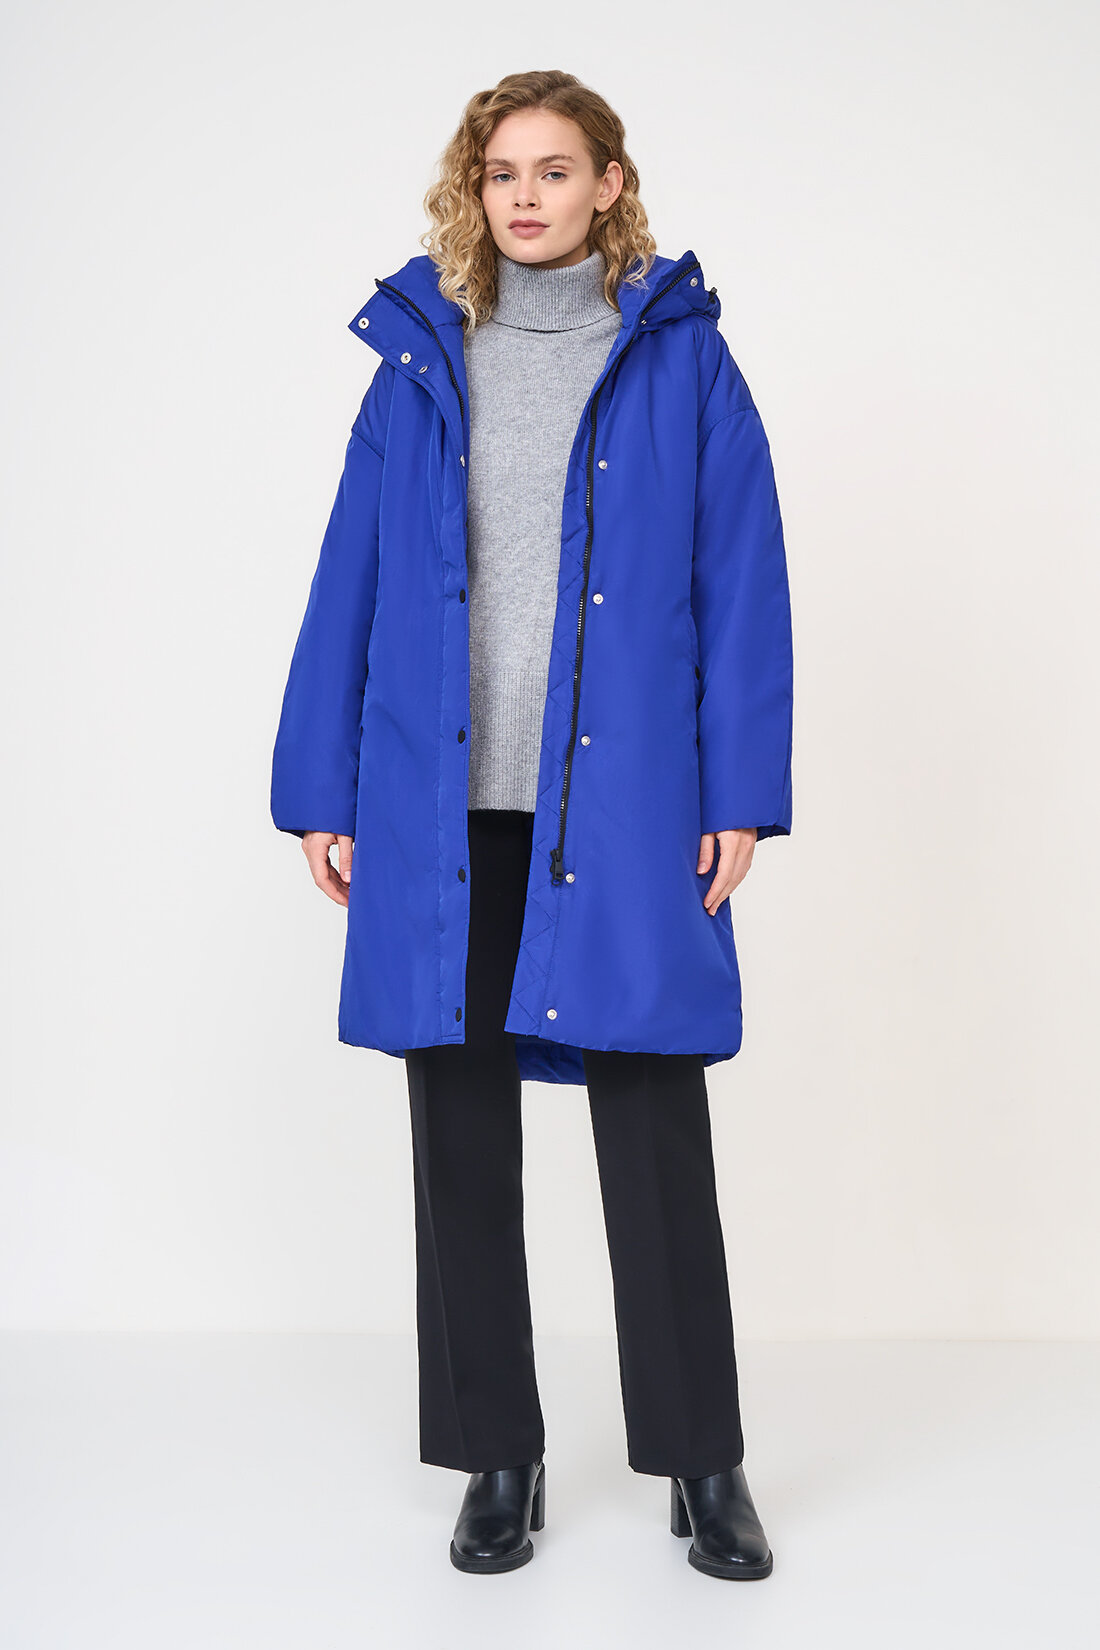 куртка Baon, демисезон/зима, удлиненная, силуэт прямой, капюшон, карманы, пояс/ремень, ветрозащитная, утепленная, манжеты, размер L, синий - фотография № 5